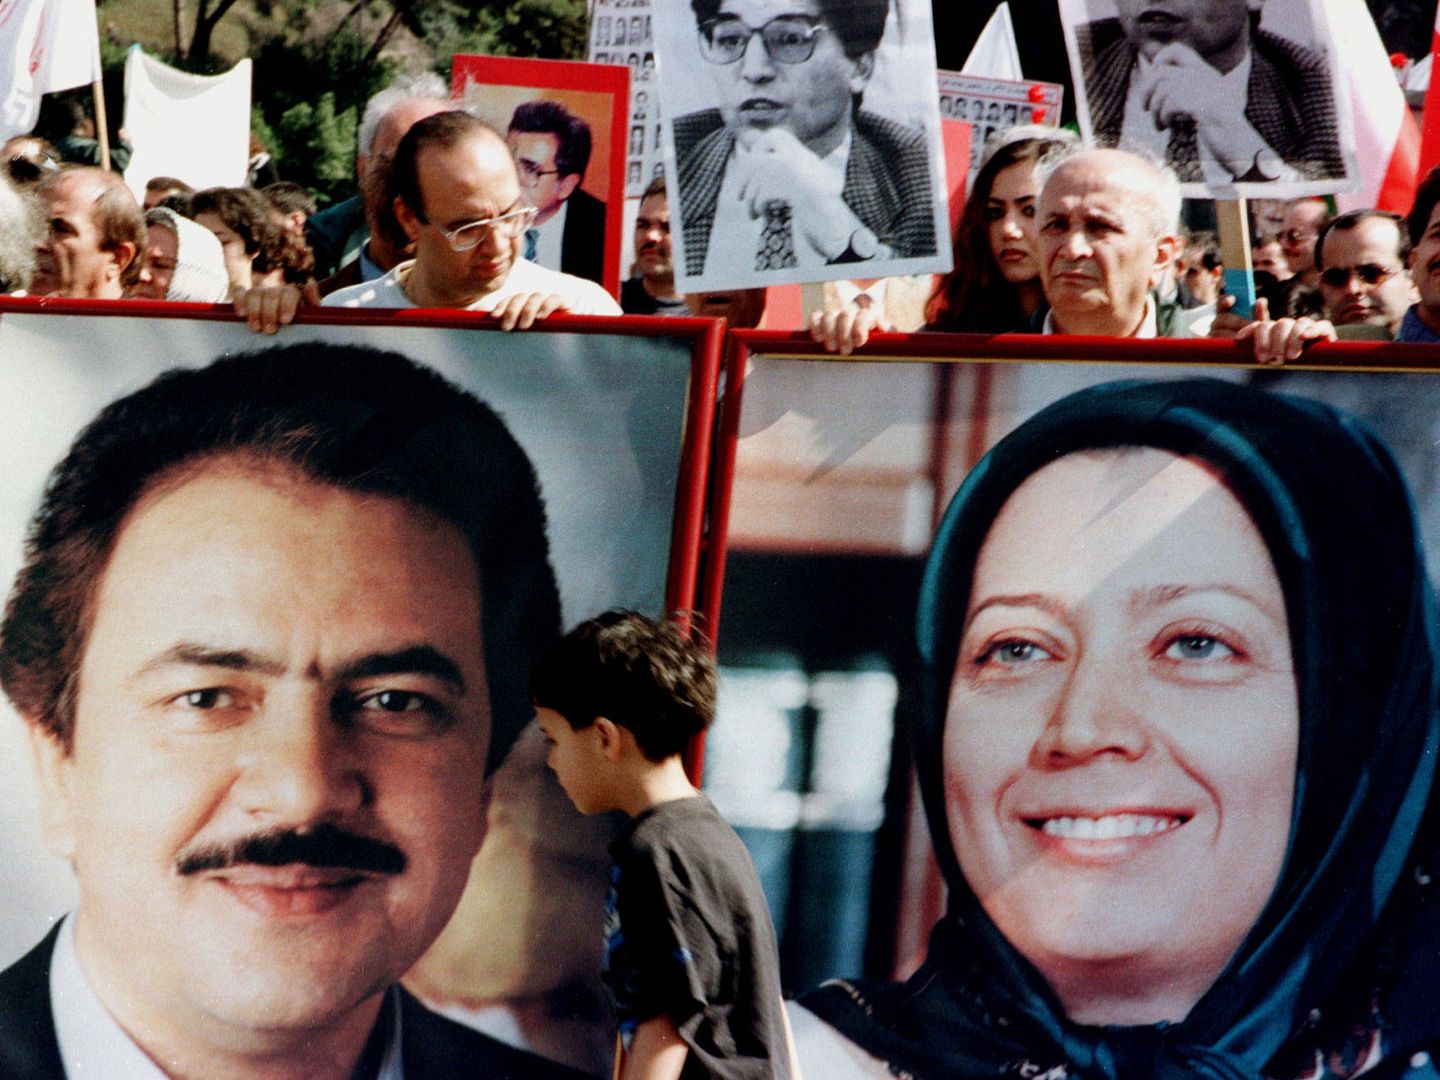 Partidarios del CNRI muestran retratos de Massoud y Maryam Rajavi durante una protesta en Roma, en 1999. (Reuters)